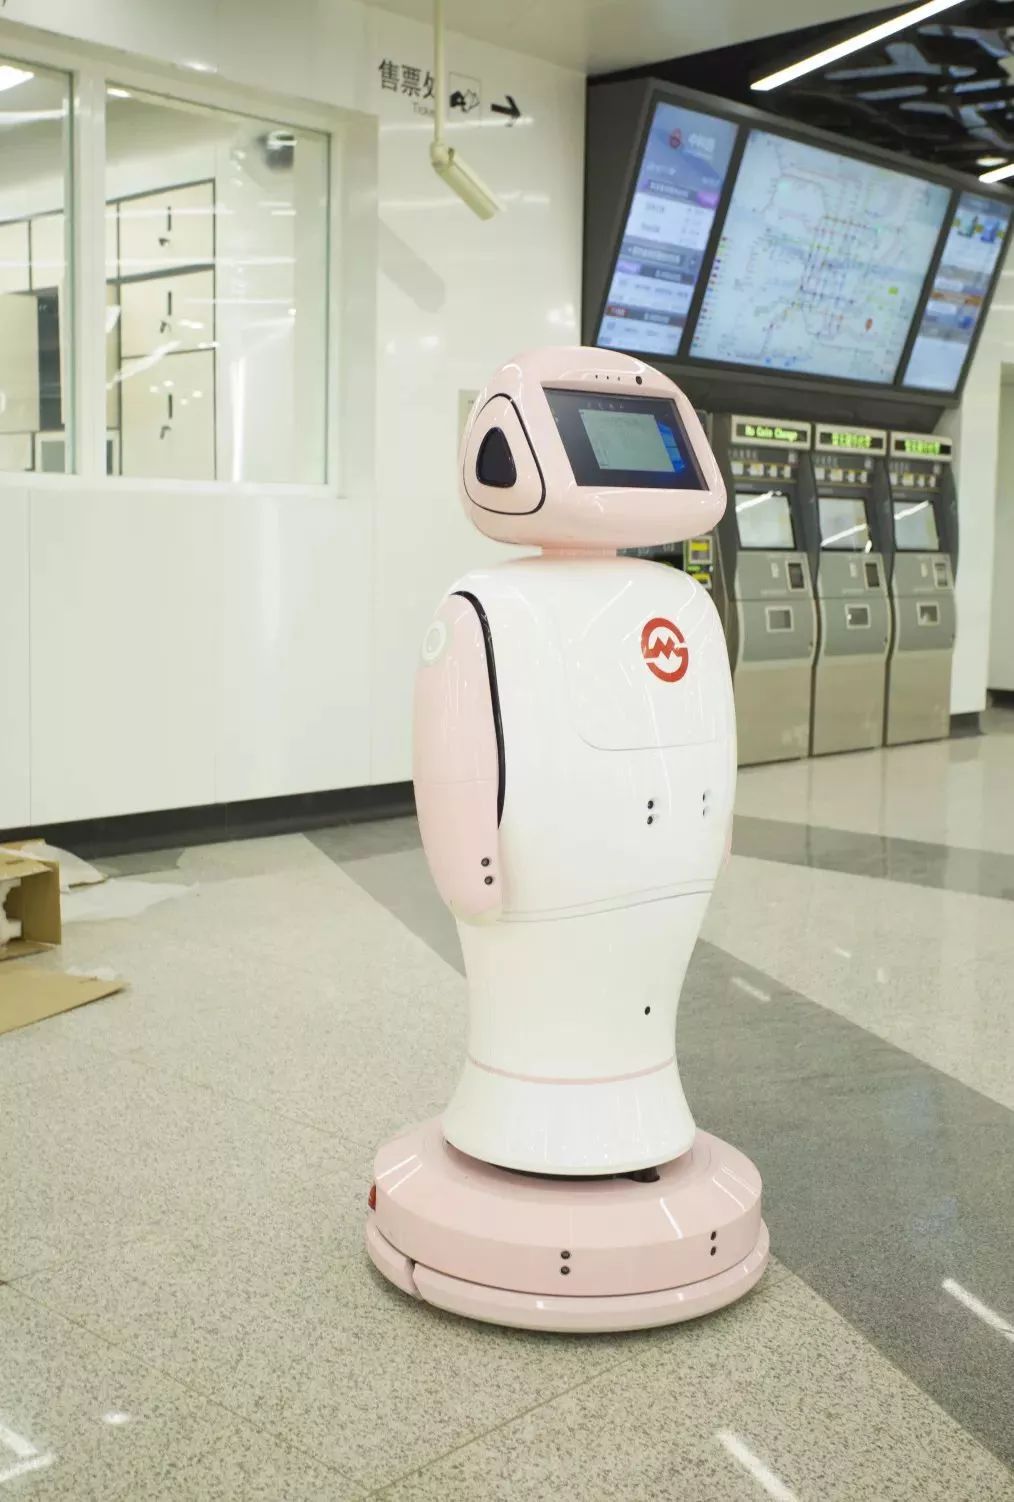 恭喜孚宝机器人成功落地上海13号地铁线!